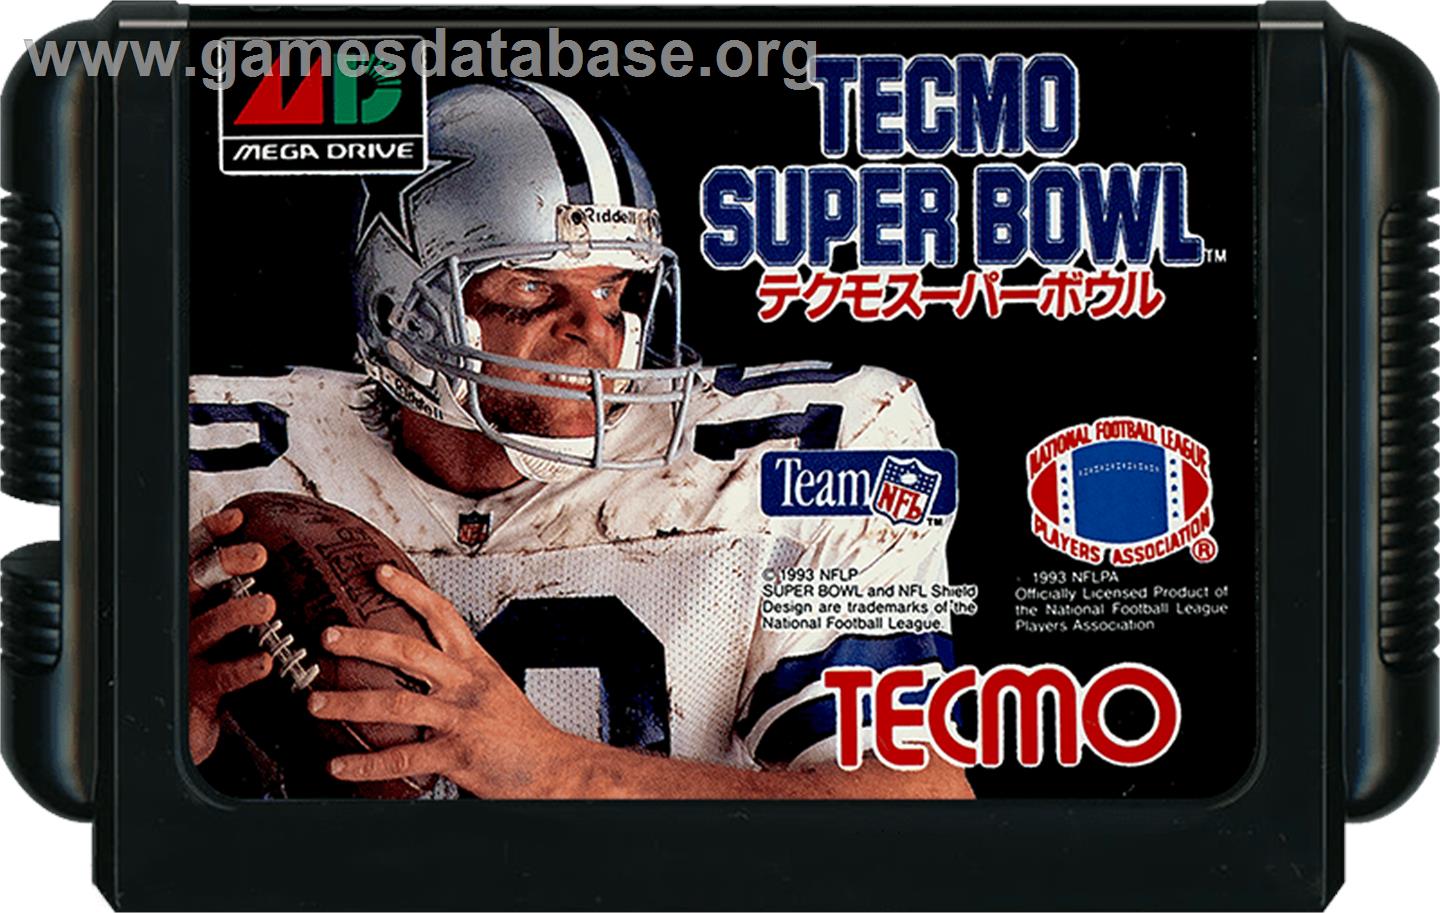 Tecmo Super Bowl - Sega Genesis - Artwork - Cartridge